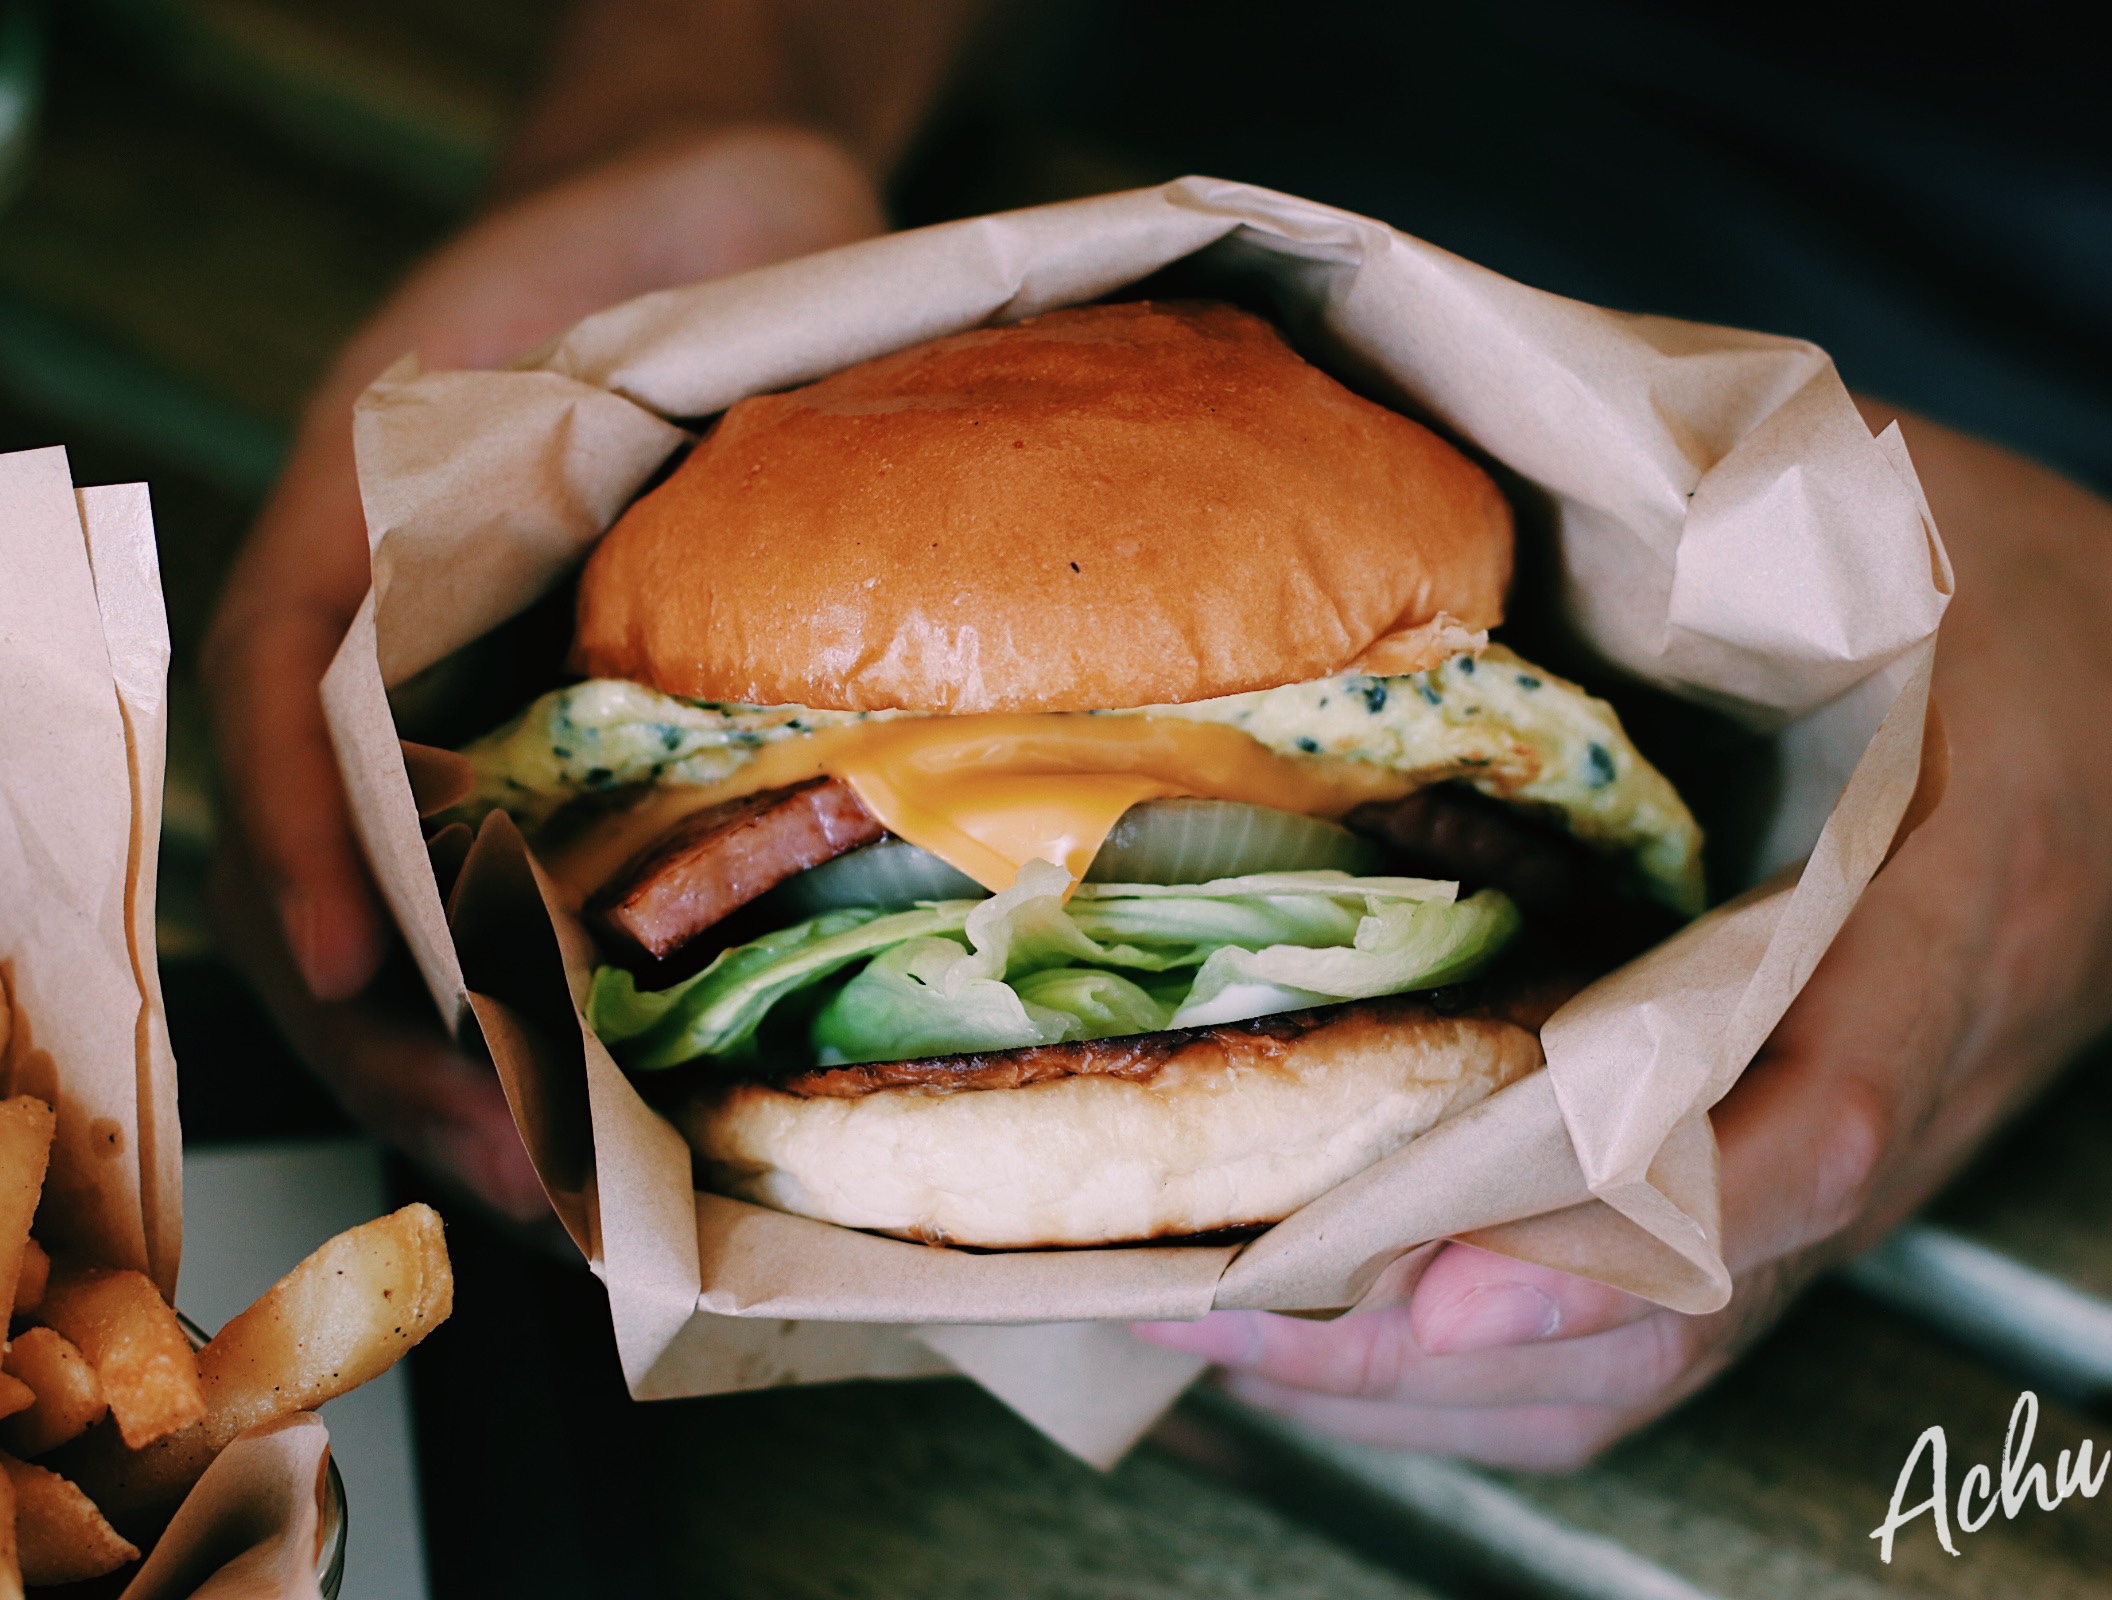 【內湖美食】Burger Behind The Door 手作美式漢堡 藏在門後般的驚喜美味 (菜單)